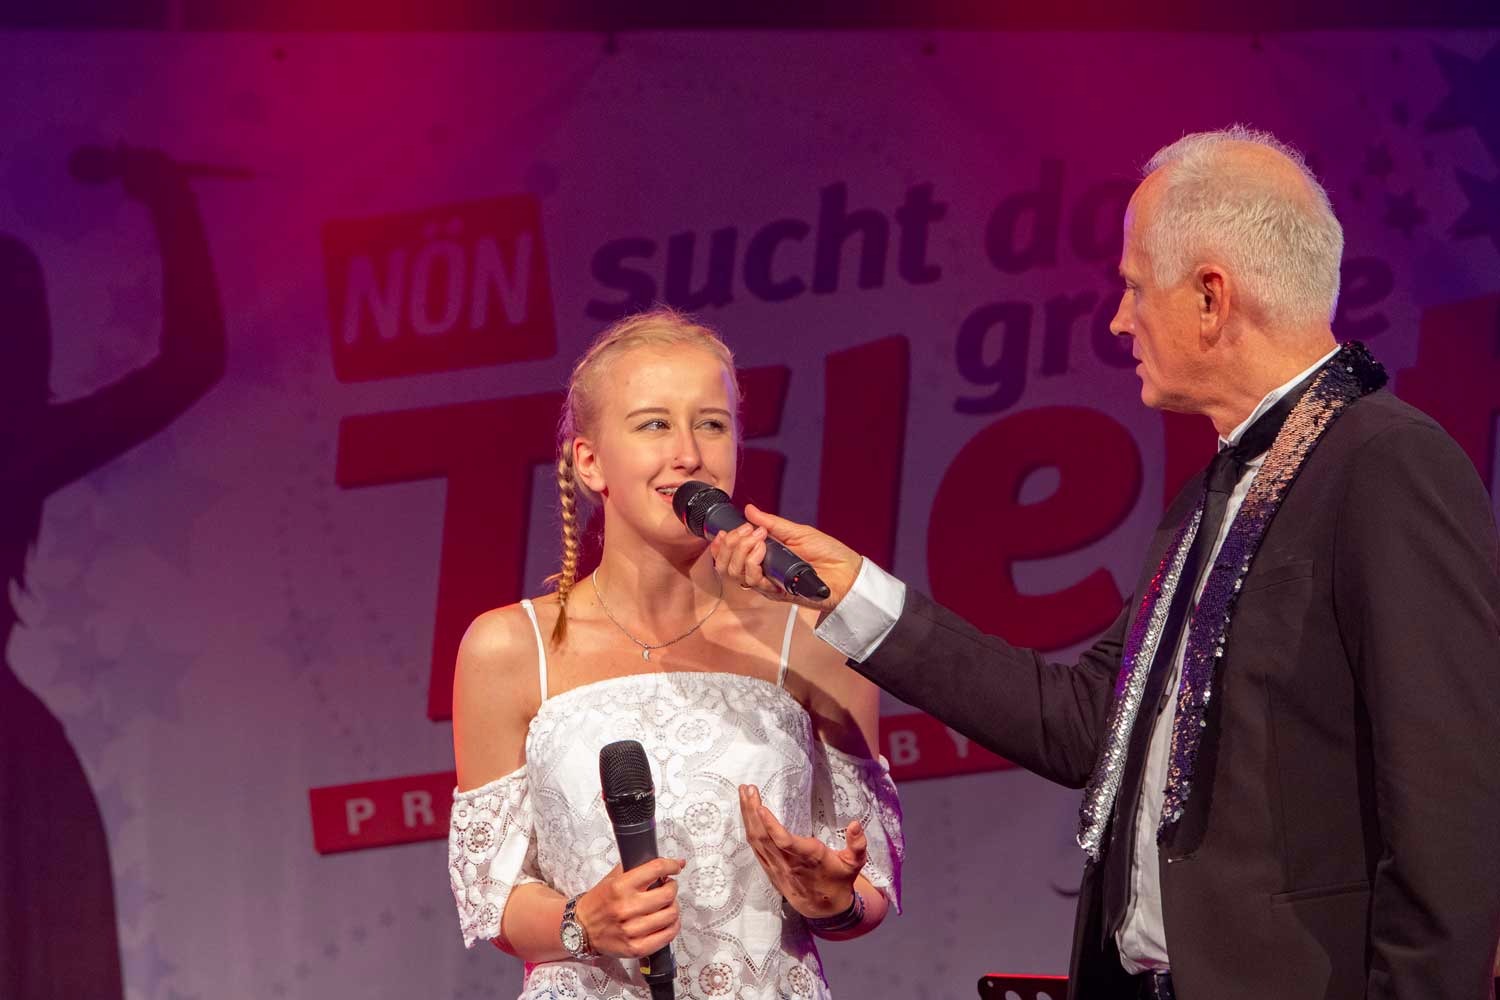 Angelina Gattringer beim Finale von "NÖN sucht das größte Talent" in Grafenwörth 28.6.2018 (c)Martin Lugmayr